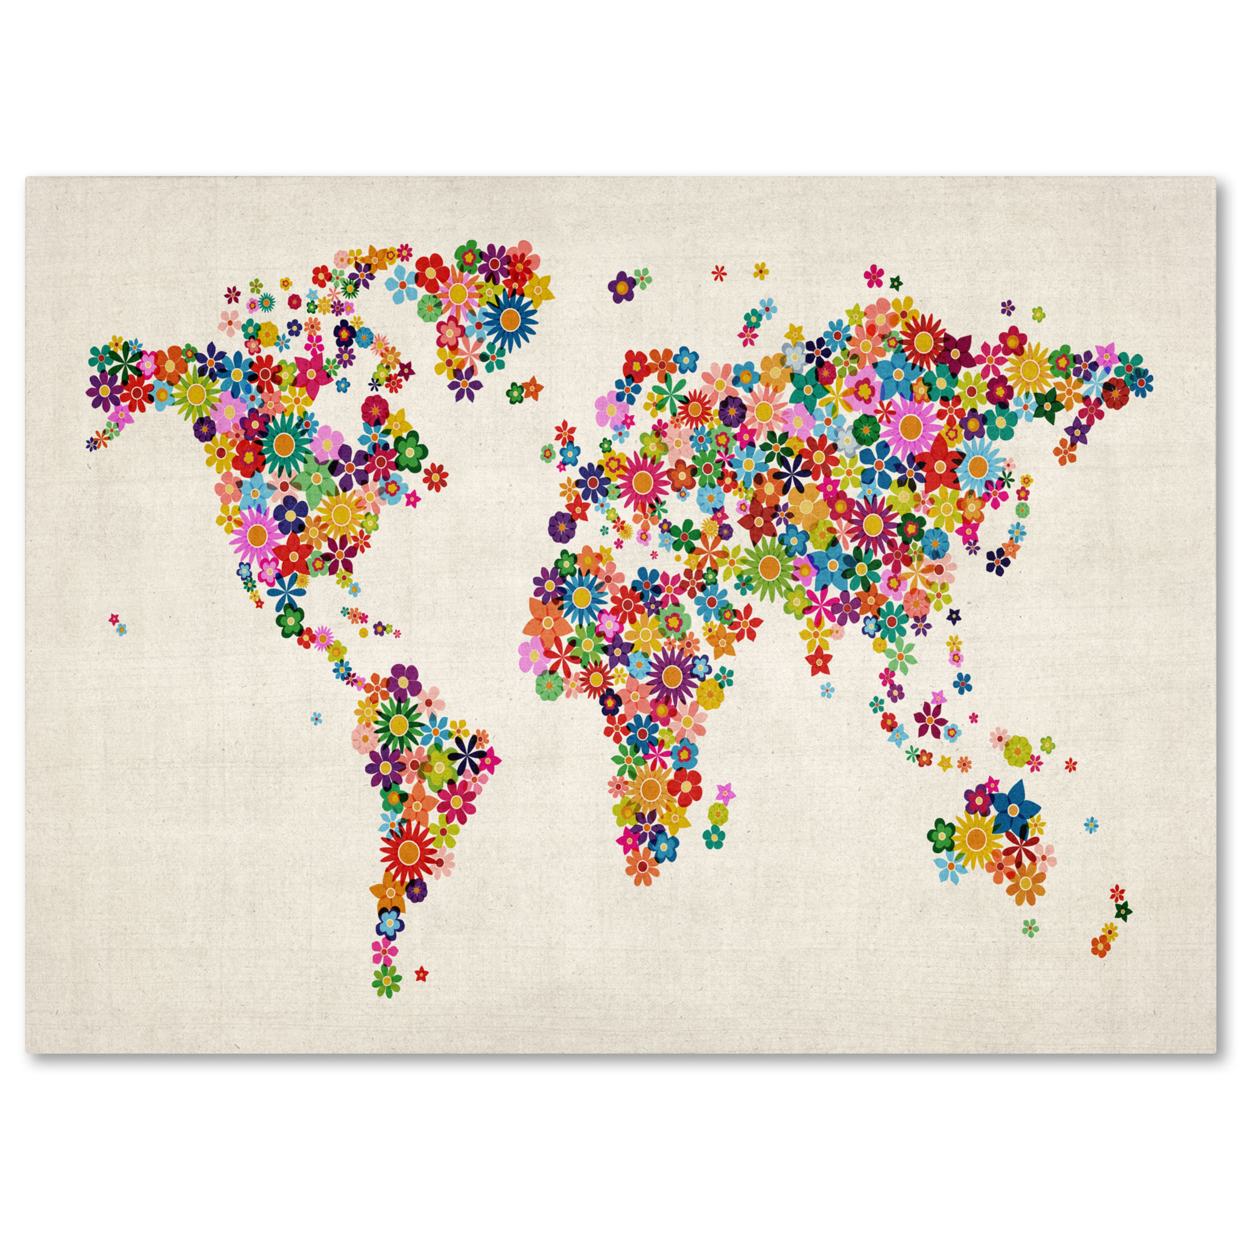 Michael Tompsett 'Flowers World Map' Canvas Art 16 X 24